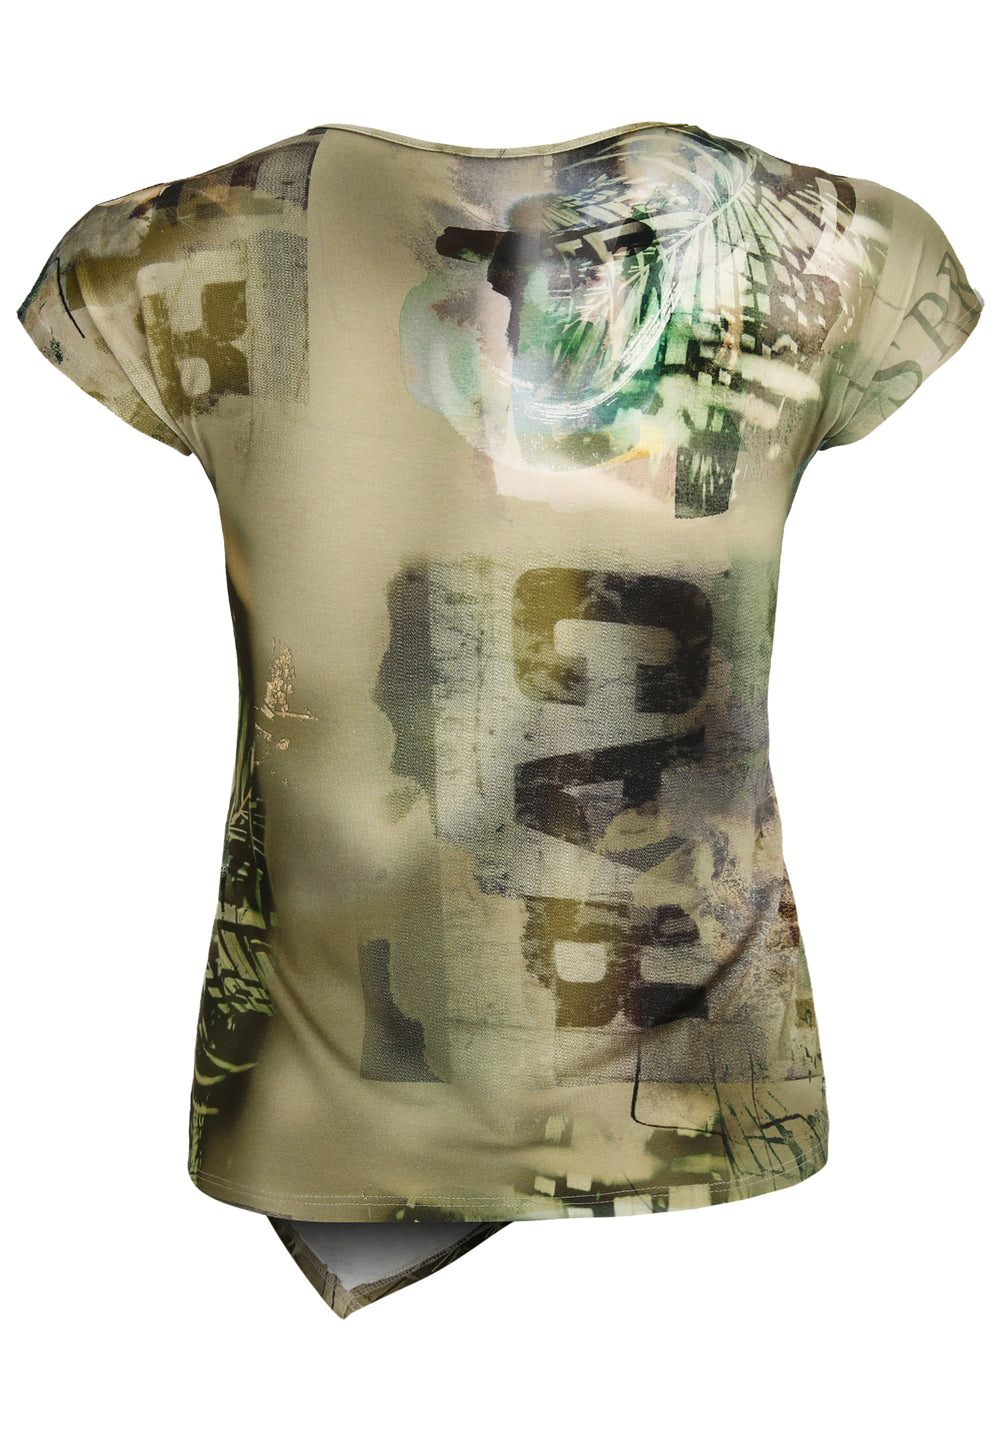 shirt met leuke tekening - doris streich - 501667-78 - grote maten - dameskleding - kledingwinkel - herent - leuven